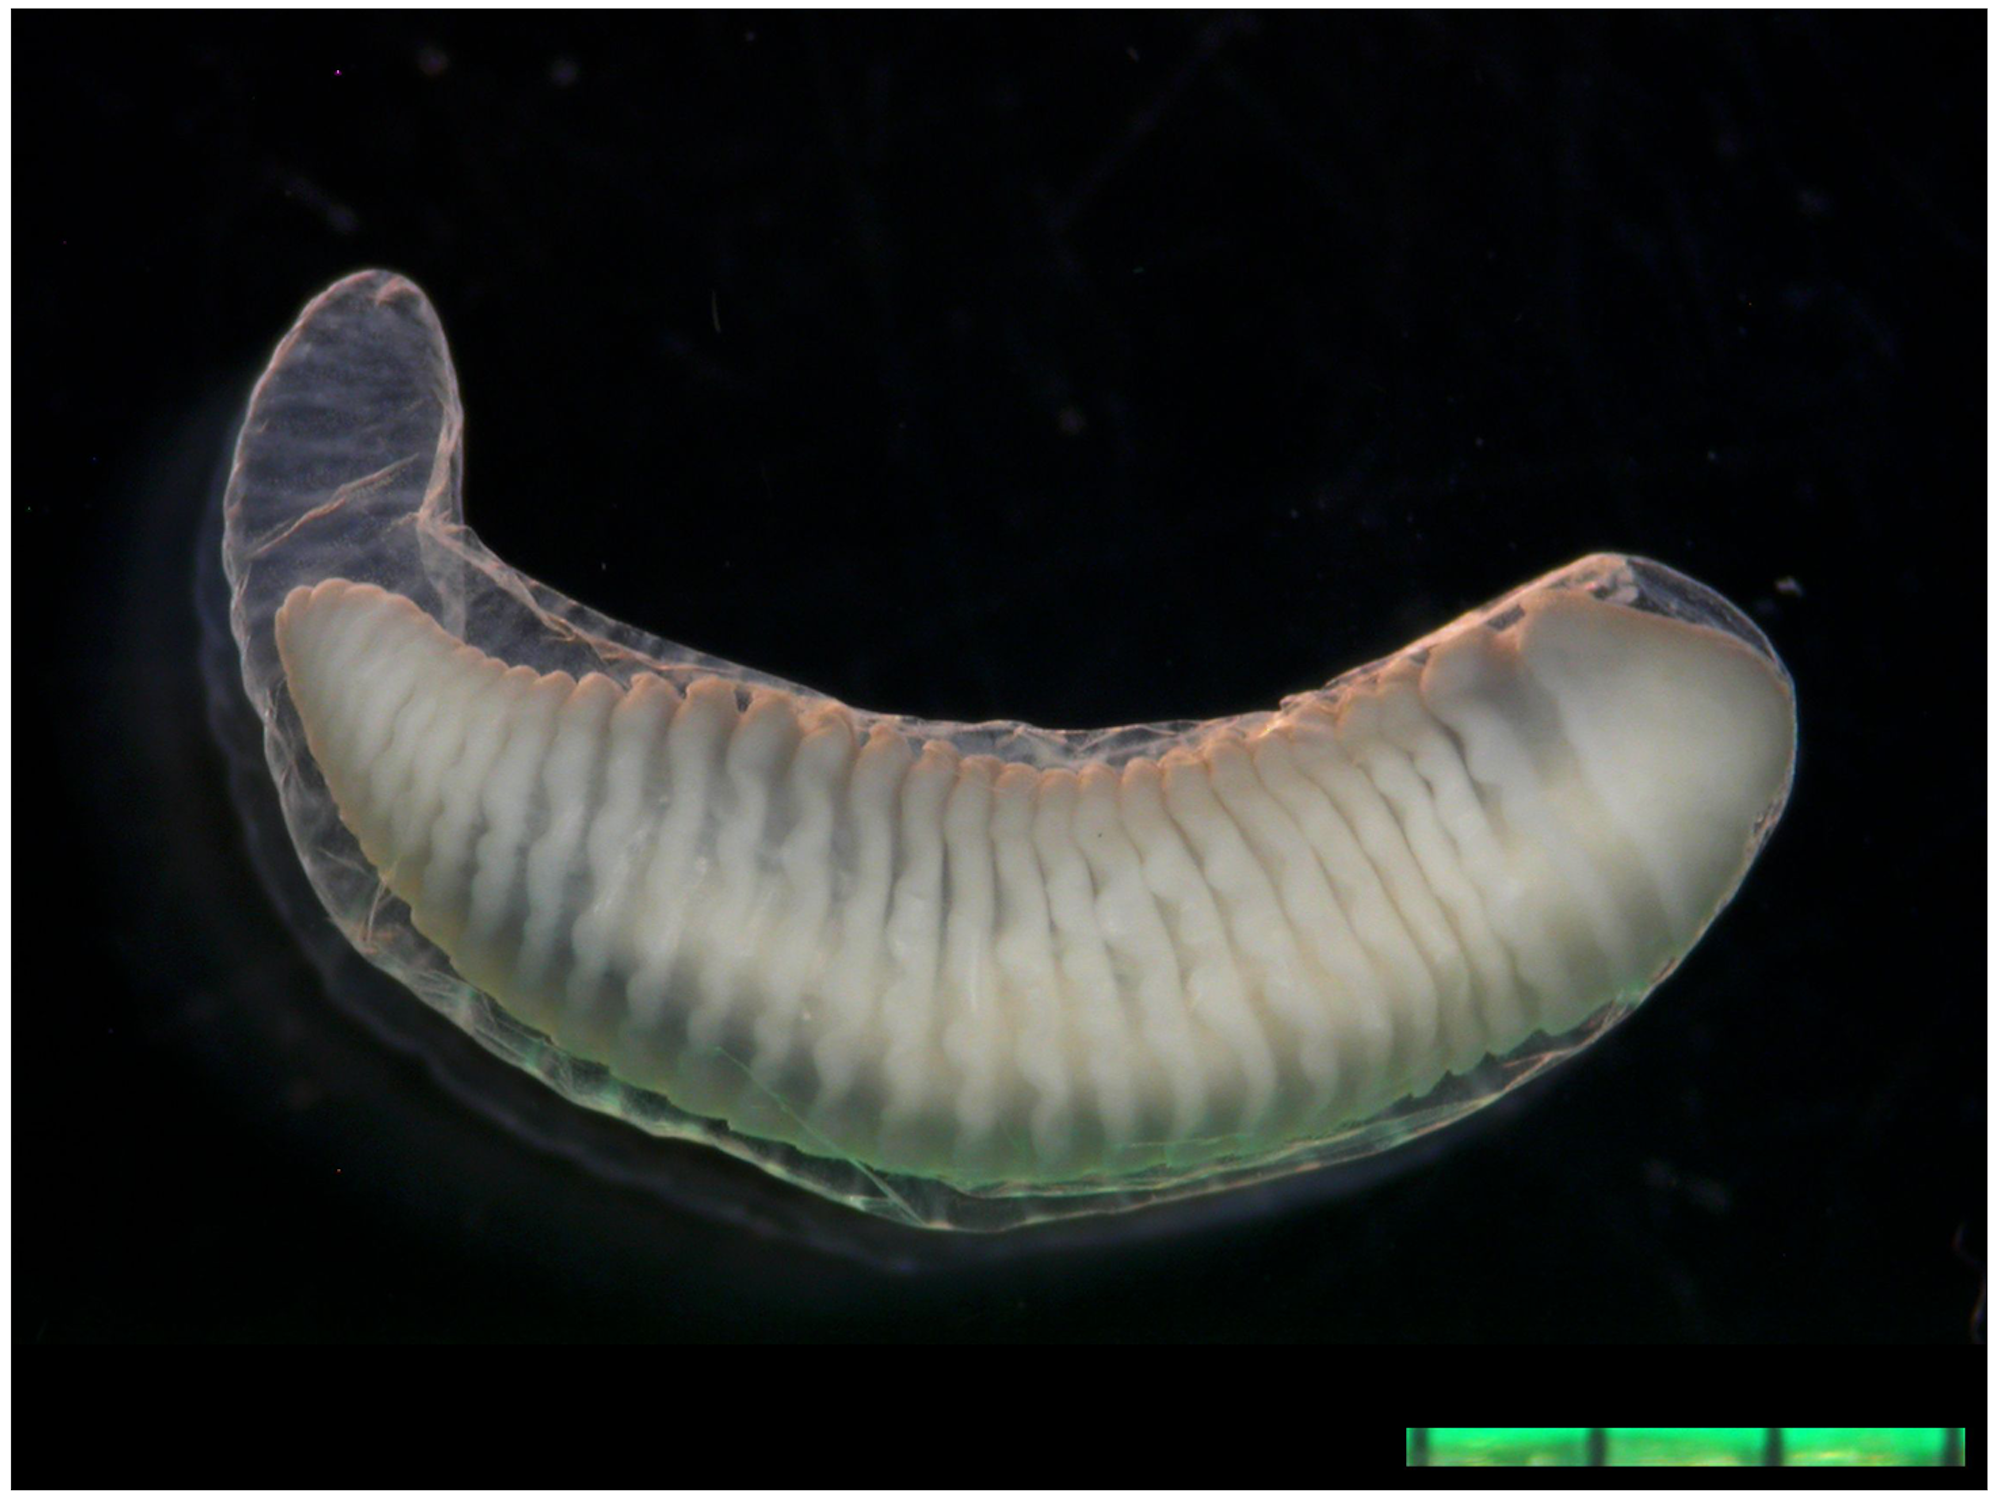 Dieser Parasit wurde aus dem Auge einer Elfjährigen entfernt. Es handelt sich um „Armillifer grandis“ – eine Zungenwurmart.